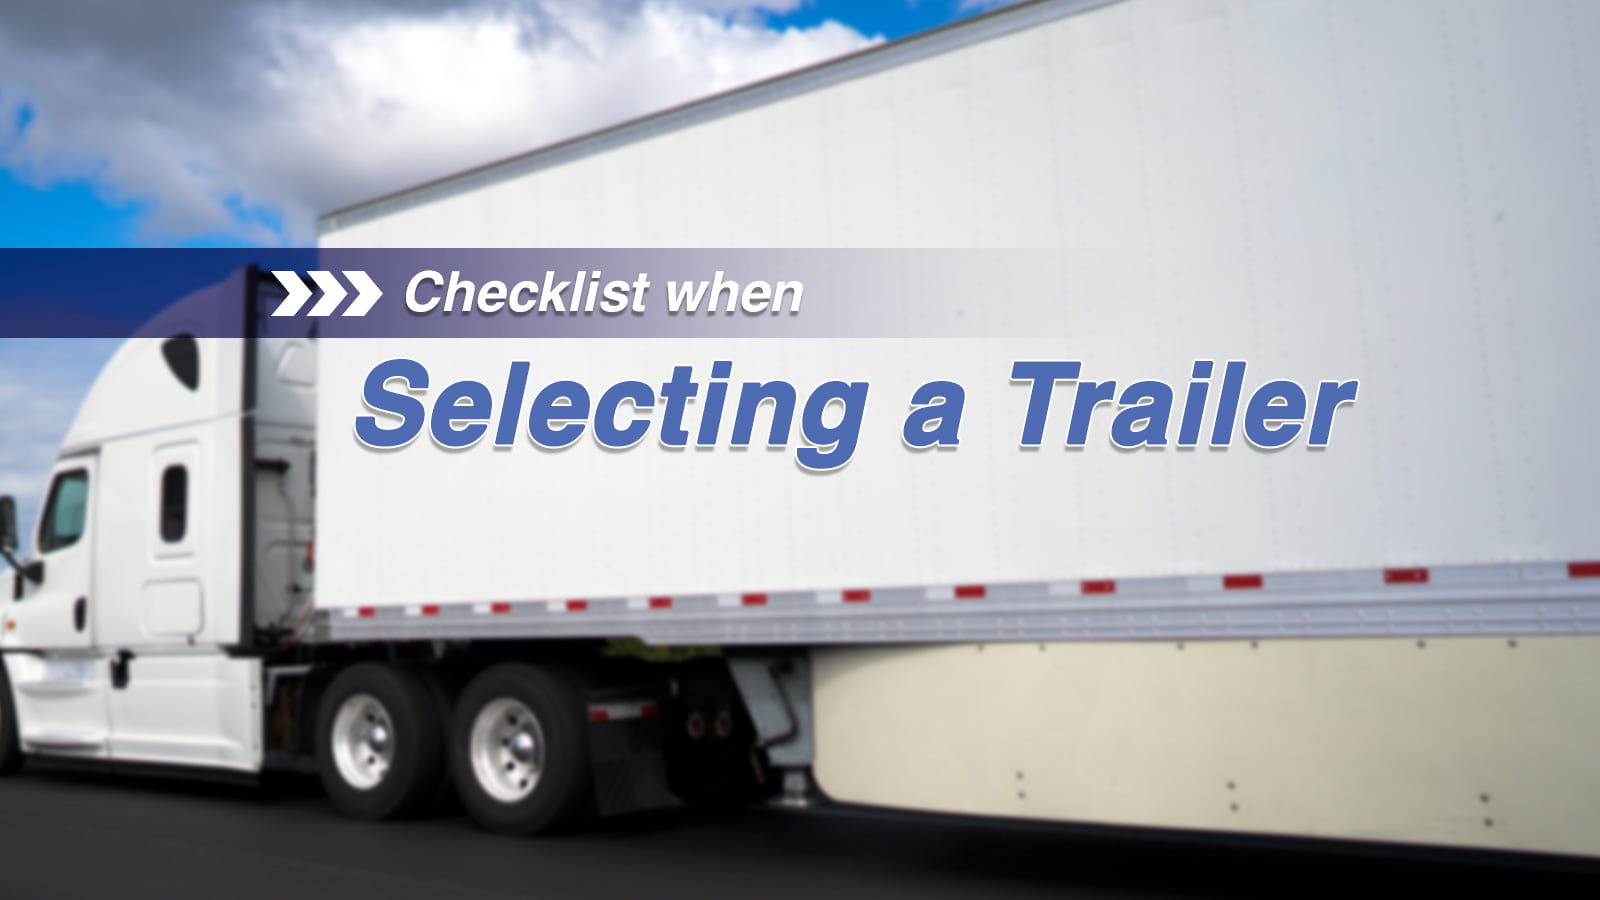 Checklist when selecting a trailer